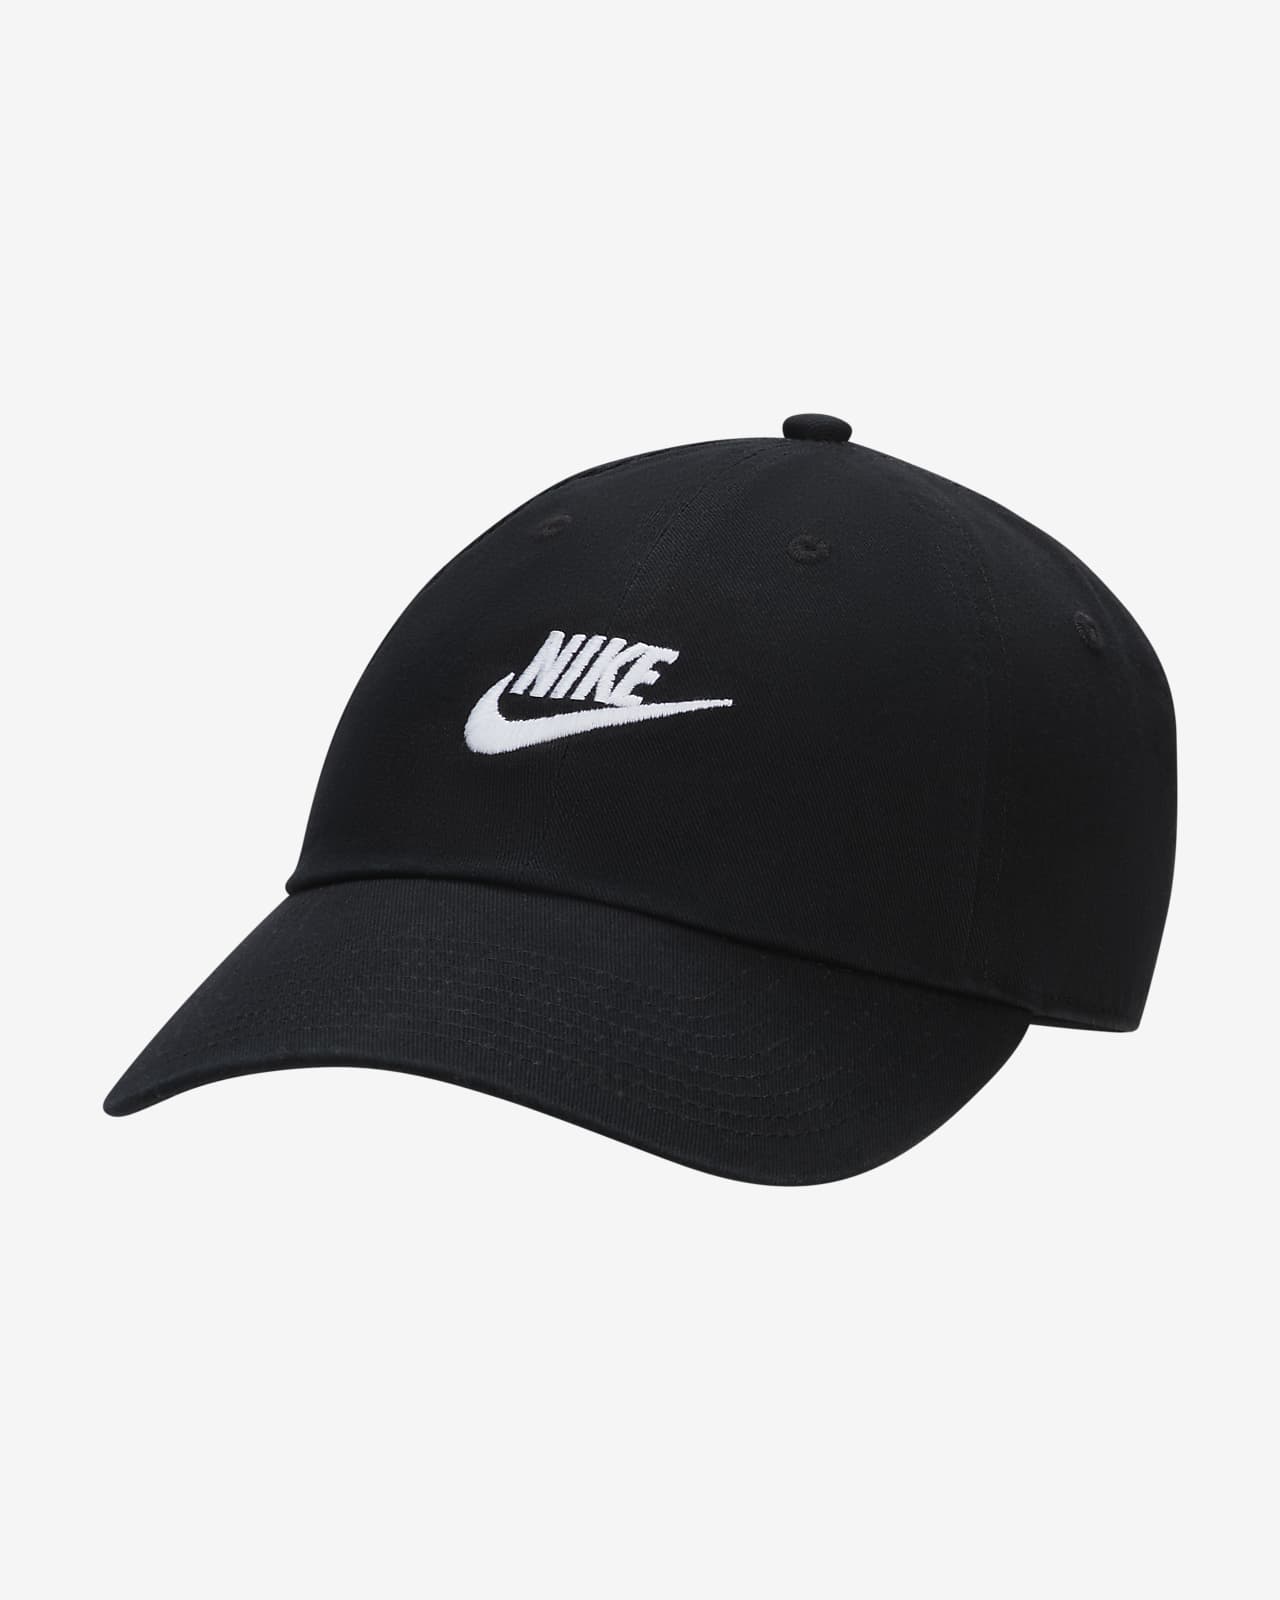 Unstructured Nike Wash Cap. Club Futura